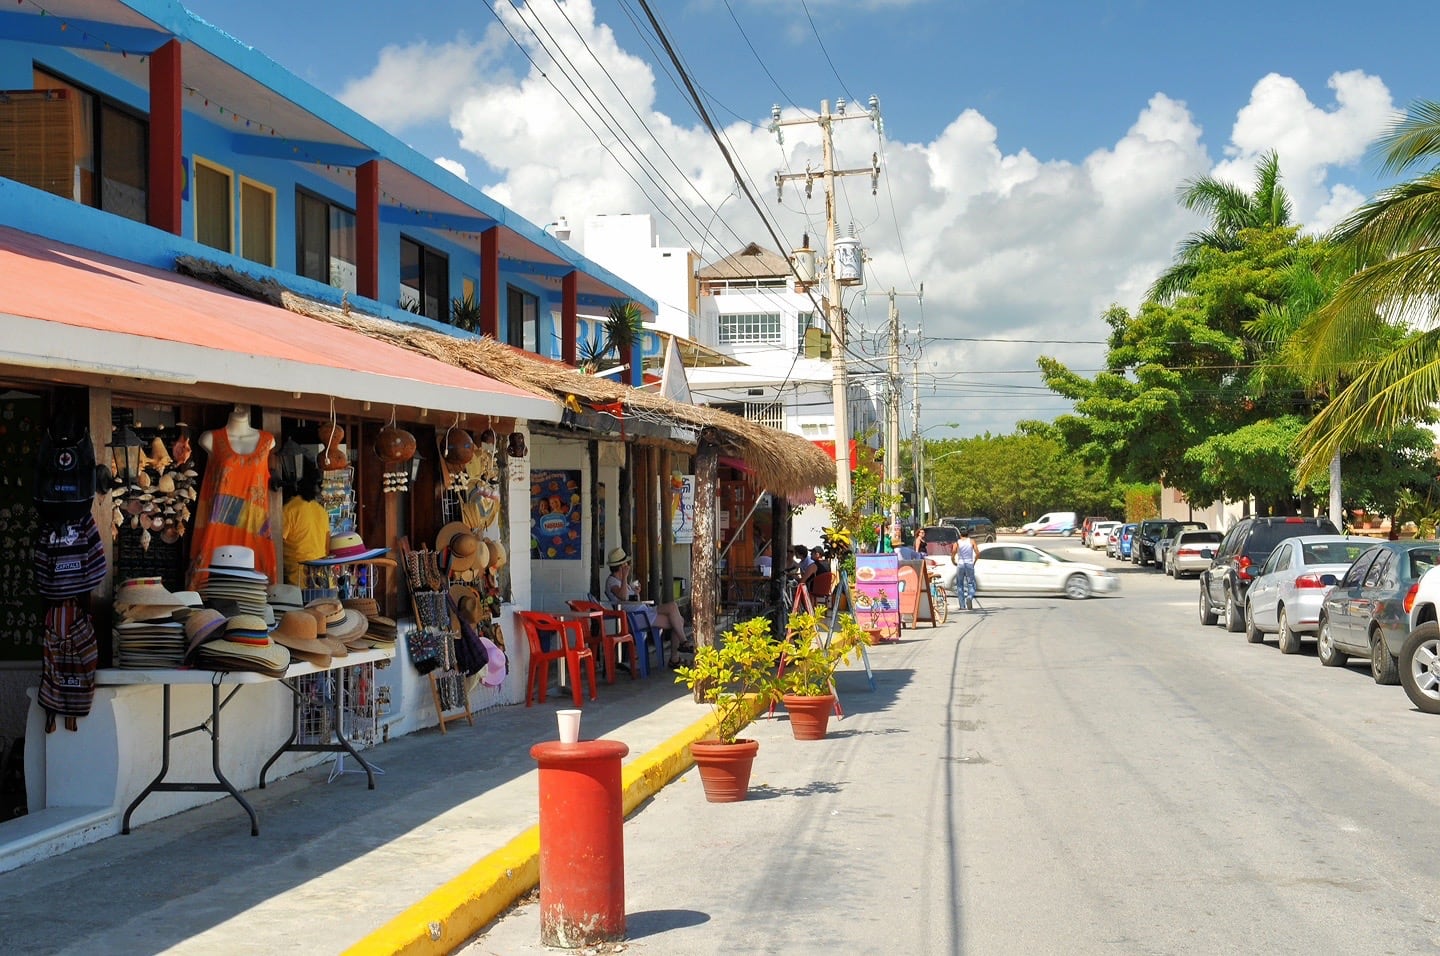 shops along road in Puerto Morelos Mexico